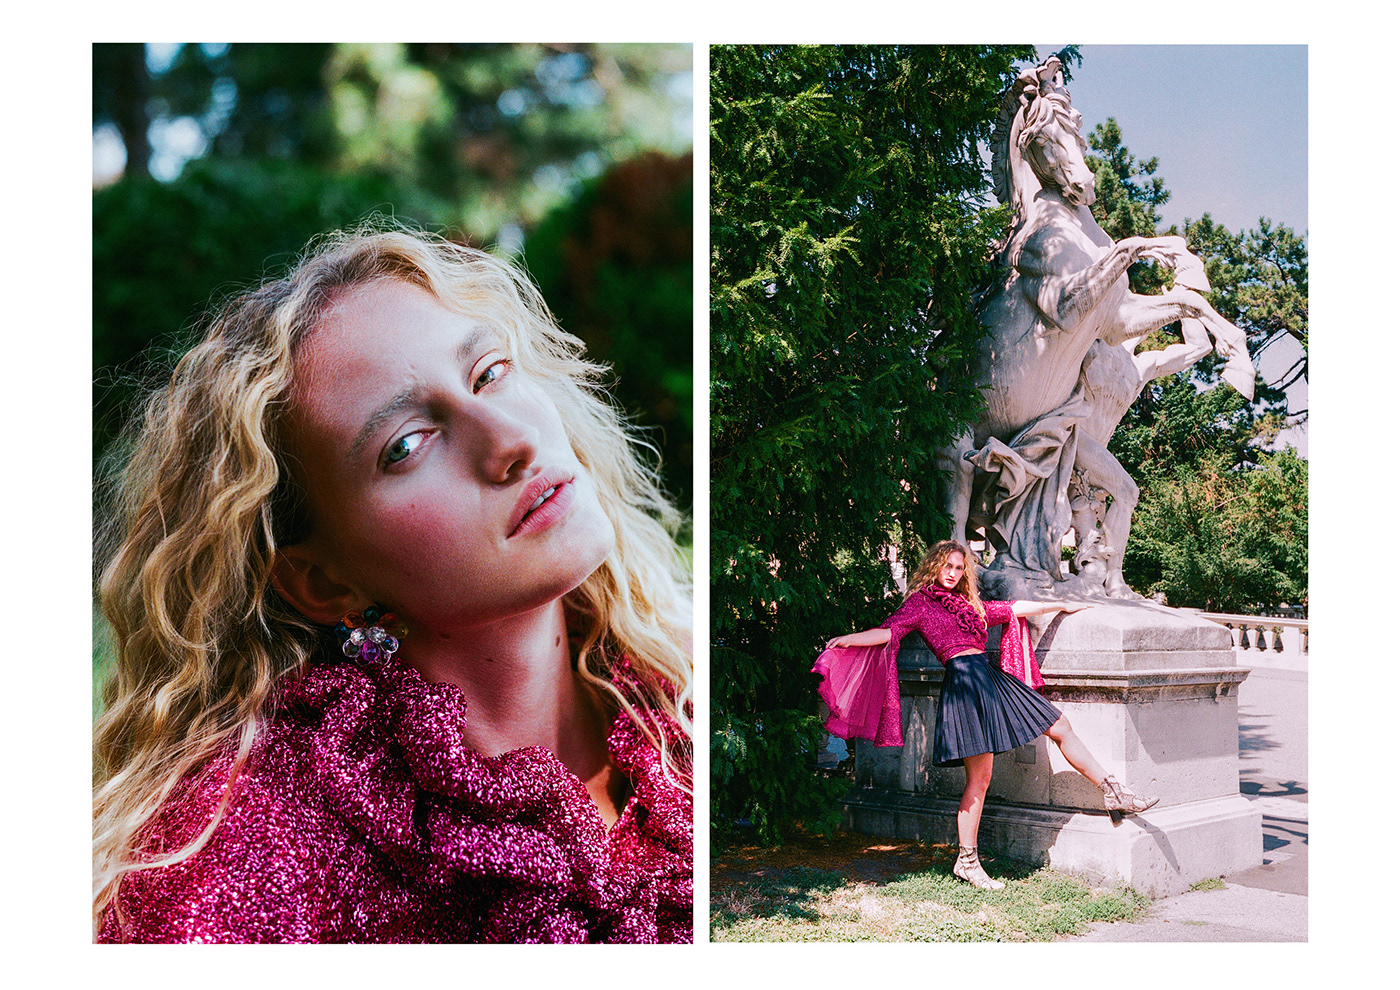 test editorial vienna agency model summer Analogue Film   minolta pink Fashion 